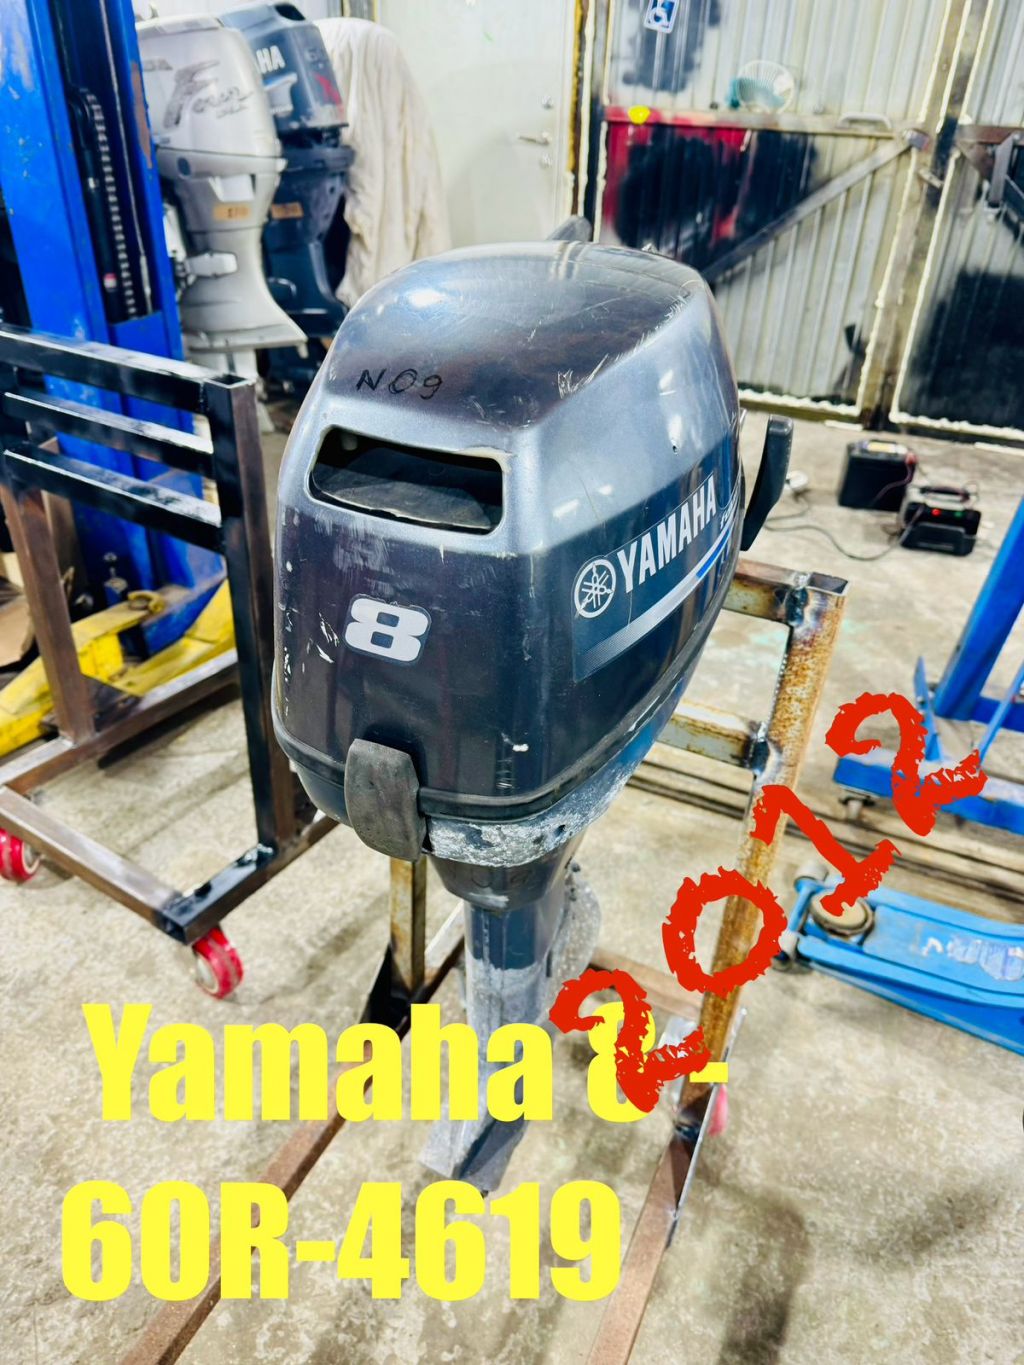 Лодочный мотор Yamaha 8-60R-4619 2012